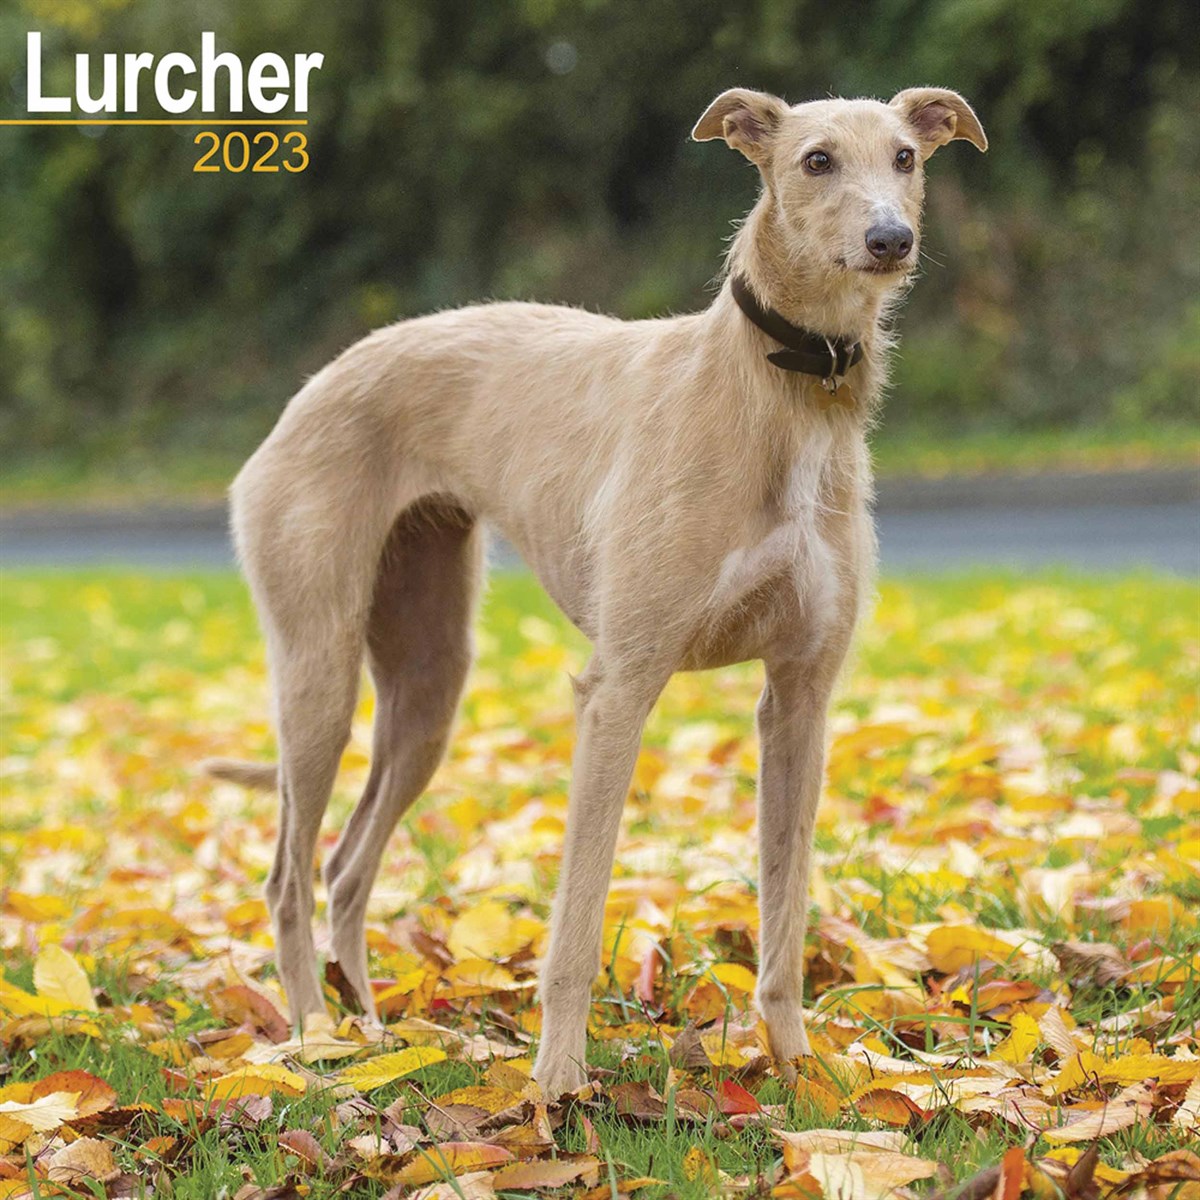 Lurcher 2023 Calendars